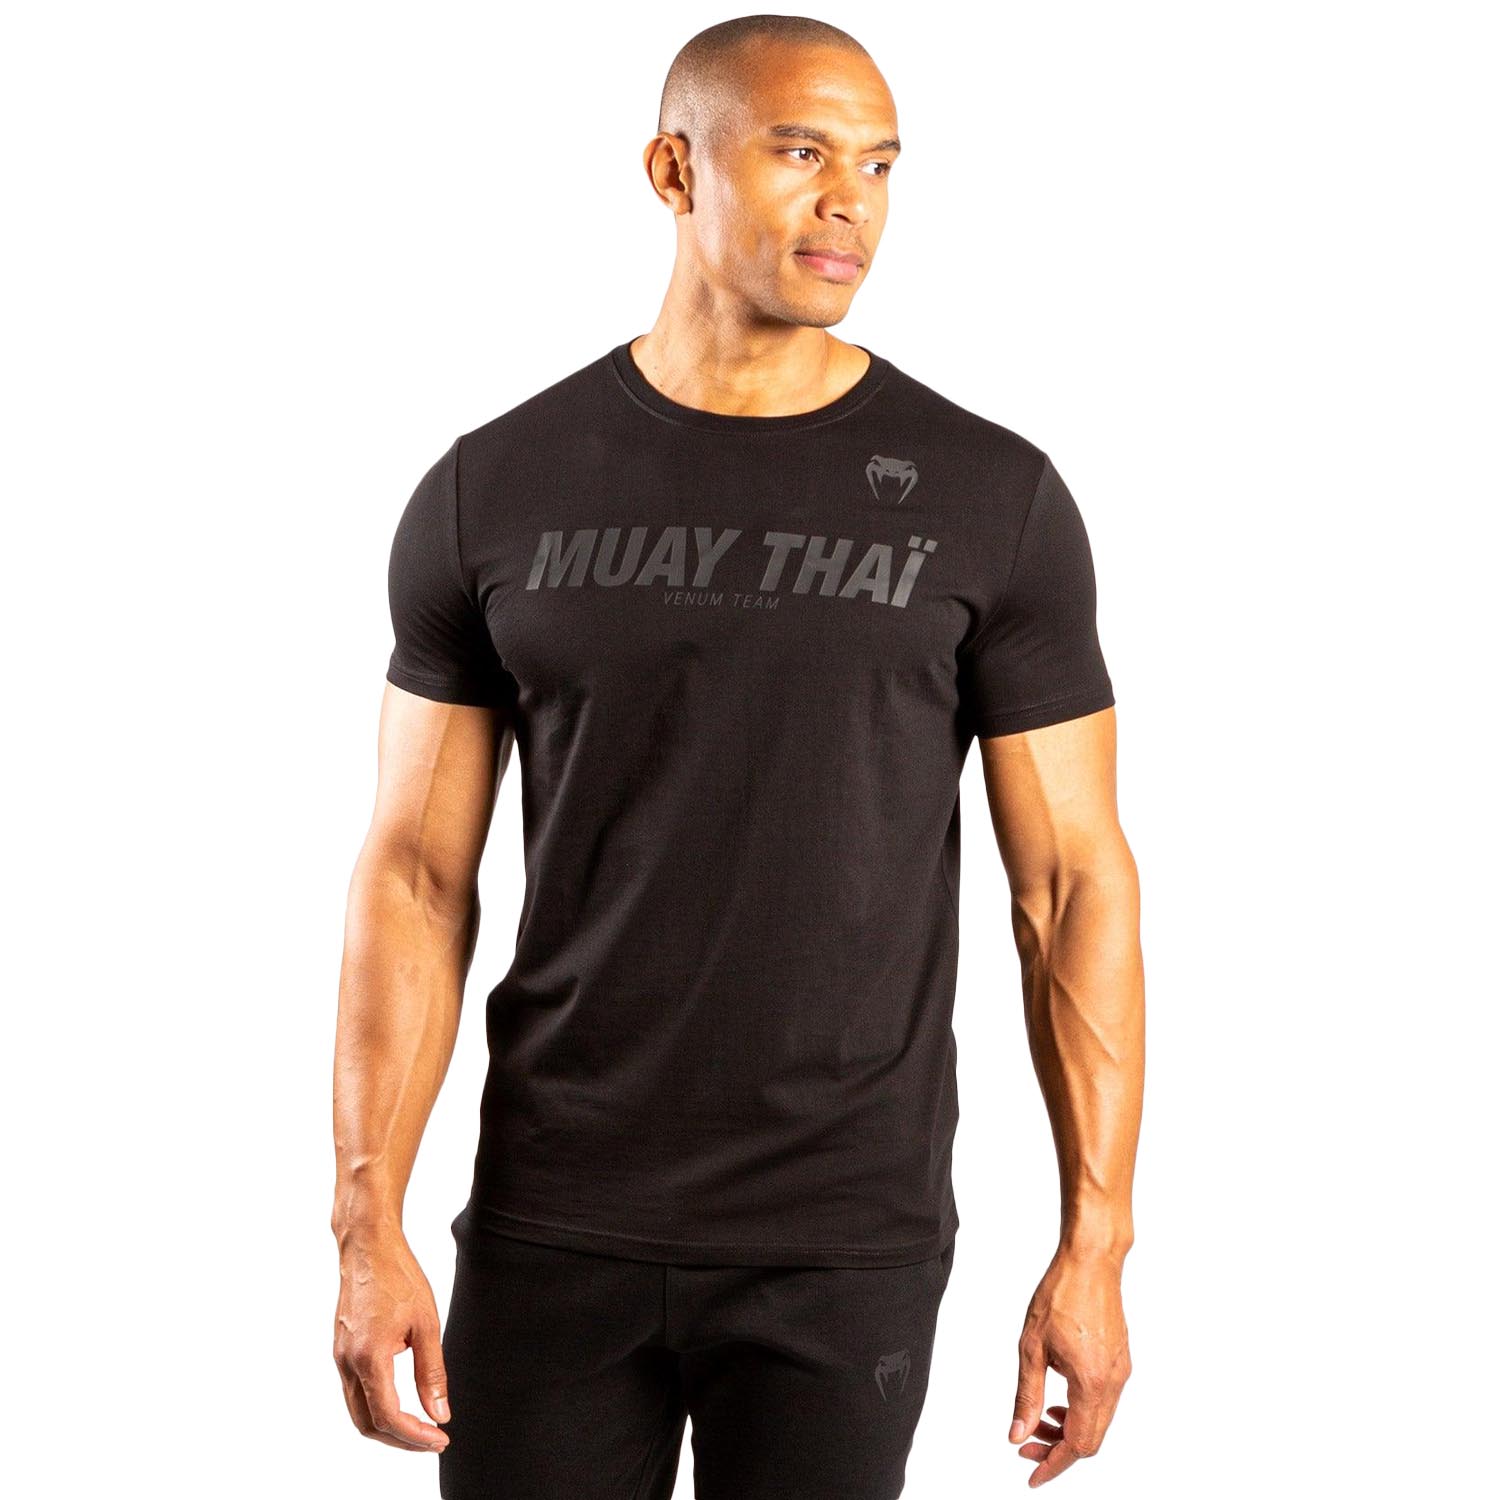 VENUM T-Shirt, Muay Thai VT, schwarz-schwarz